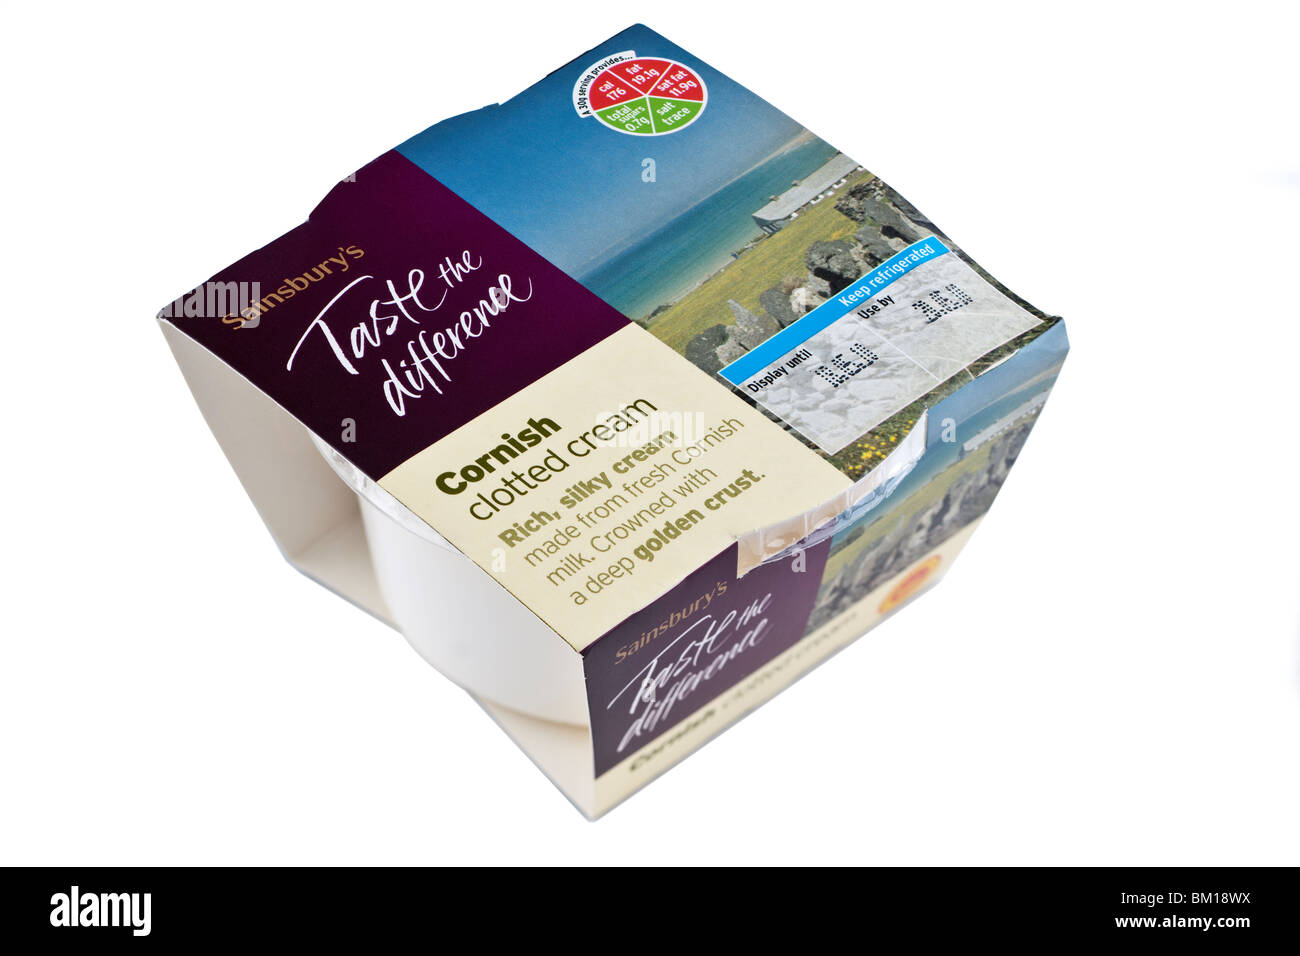 Box Wanne von Sainsburys Geschmack den Unterschied Cornish Clotted cream Stockfoto